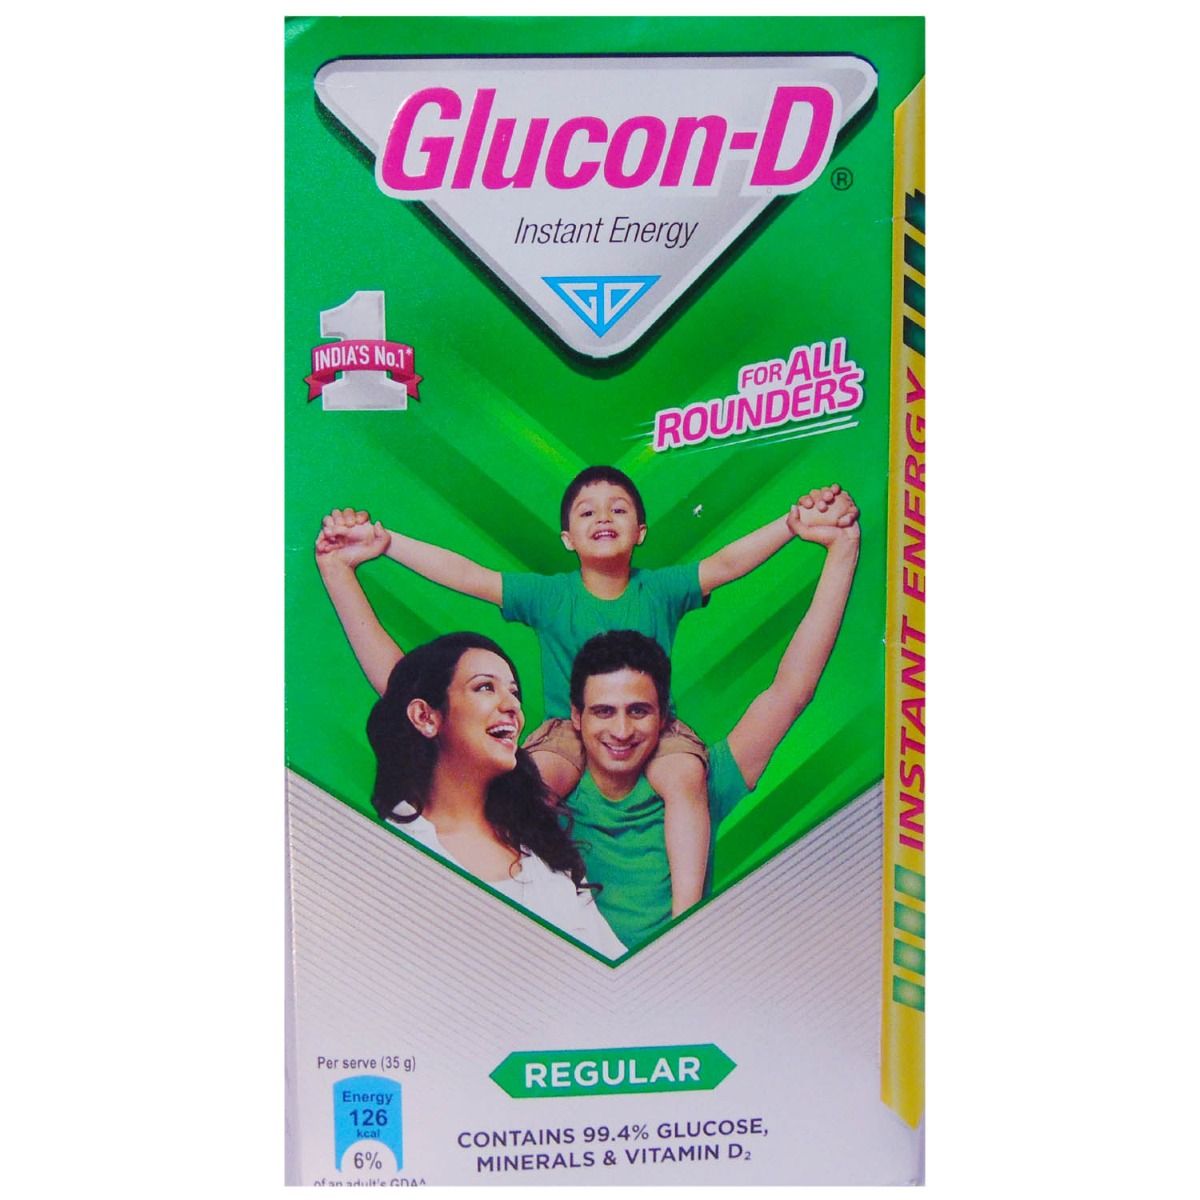 Glucon-D Regular Instant Energy Drink, 1 kg Refill Pack, Pack of 1 